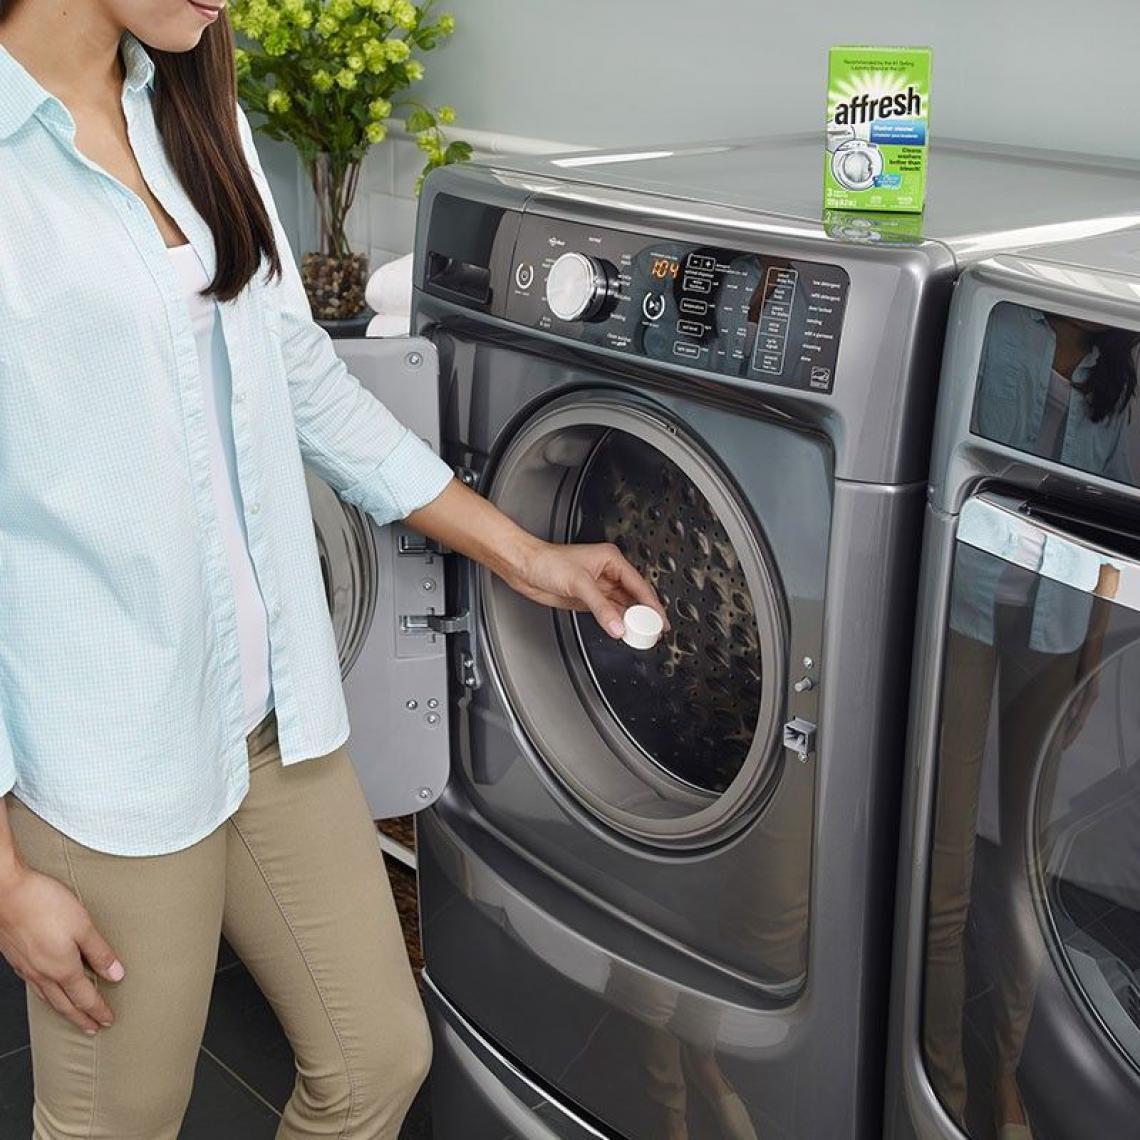 Inconnu - Affresh - Pack de 6 Pastilles pour nettoyer les machines à laver (6 x 40g) - Matériel de pose, produits d'entretien